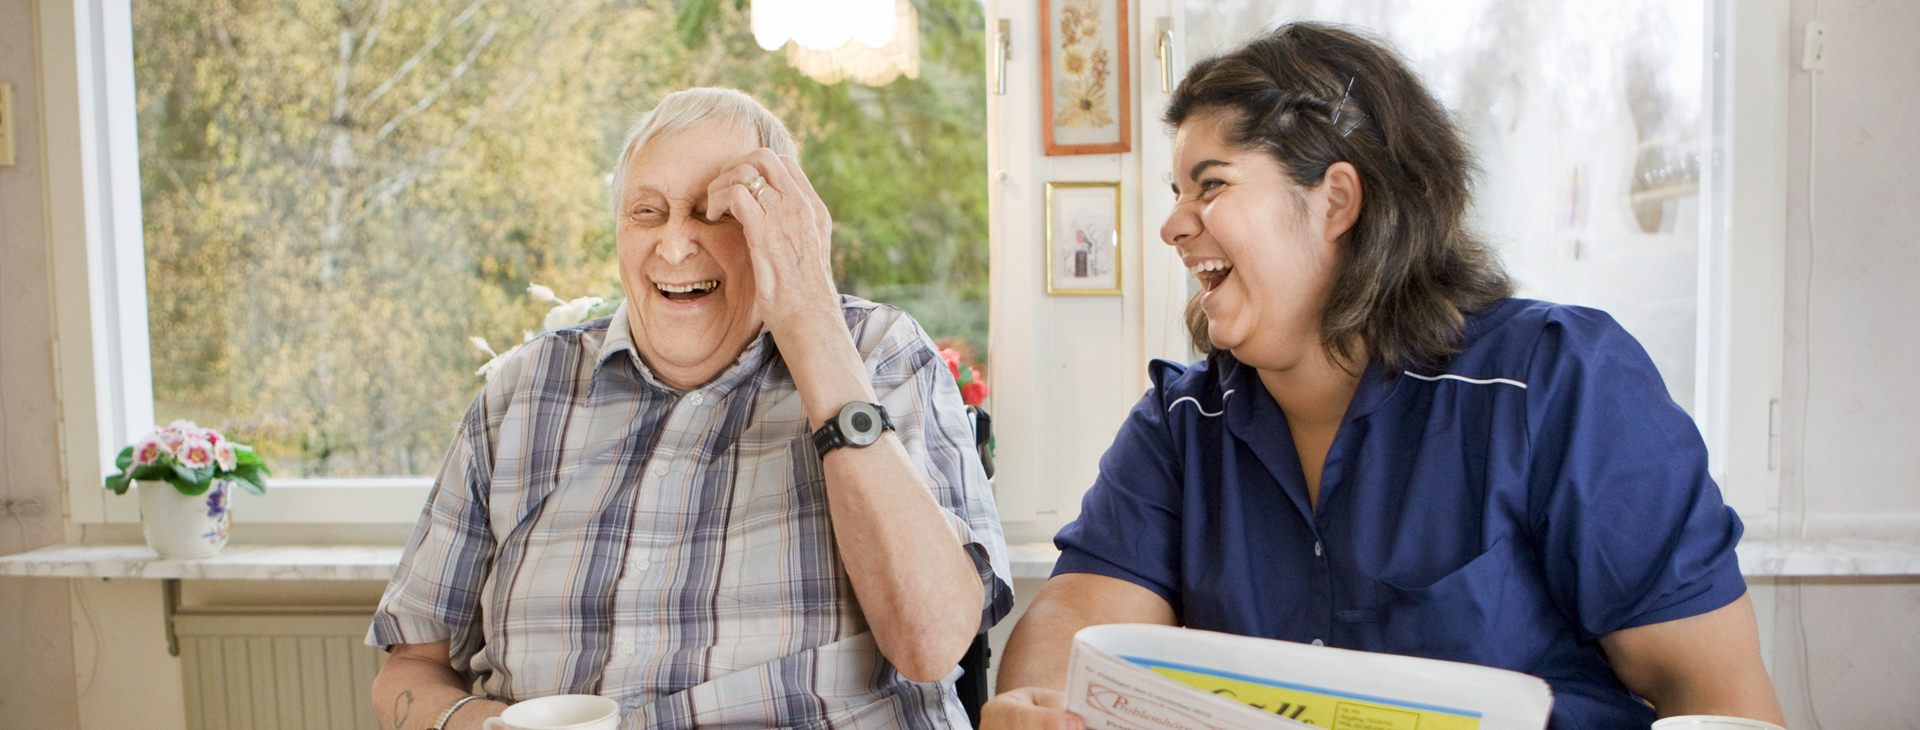 Äldre man och kvinna från hemtjänst skrattar tillsammans.